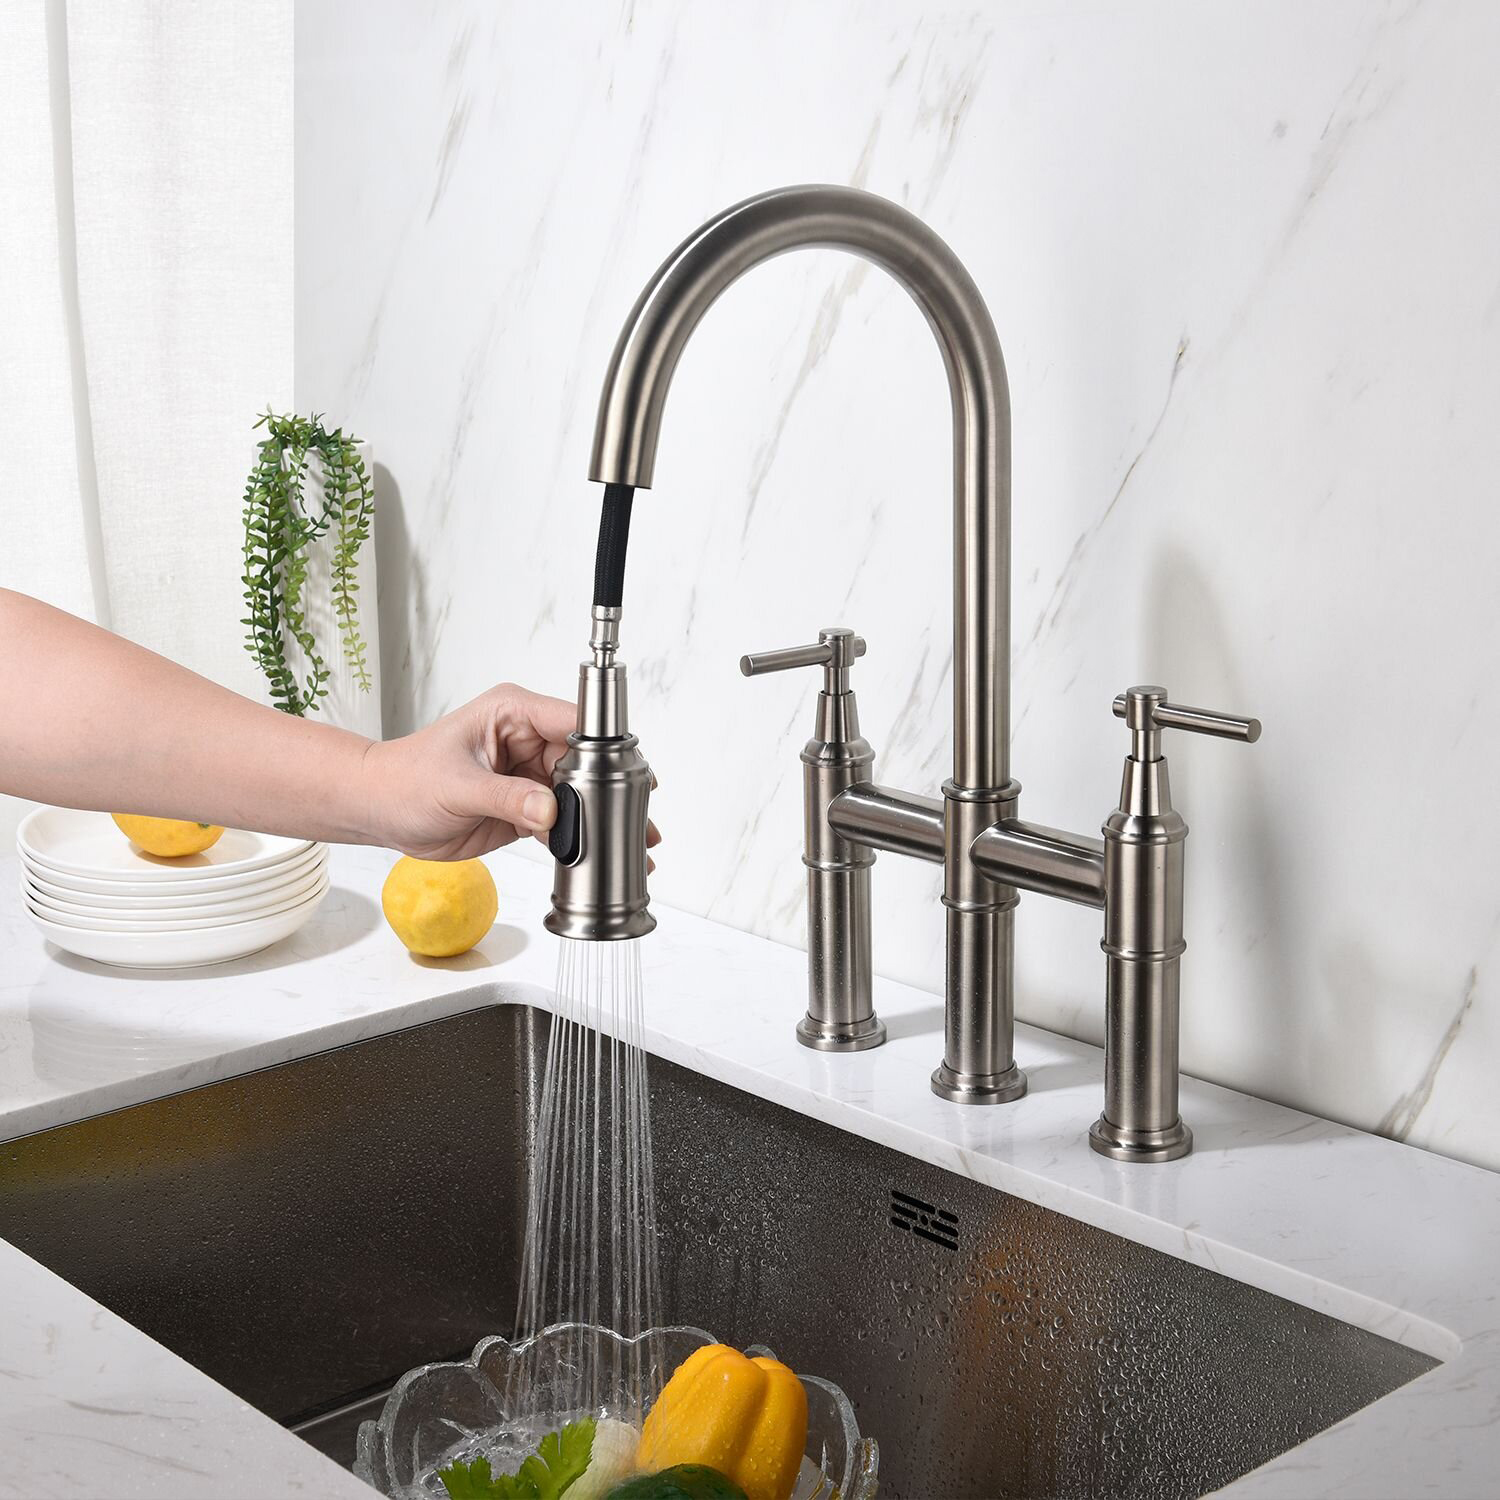 Bridge Kitchen Faucet with Pull-Down Sprayer Matte Black 3 Hole Kitchen Sink Faucet, Fingerprint Resistant Spot Free